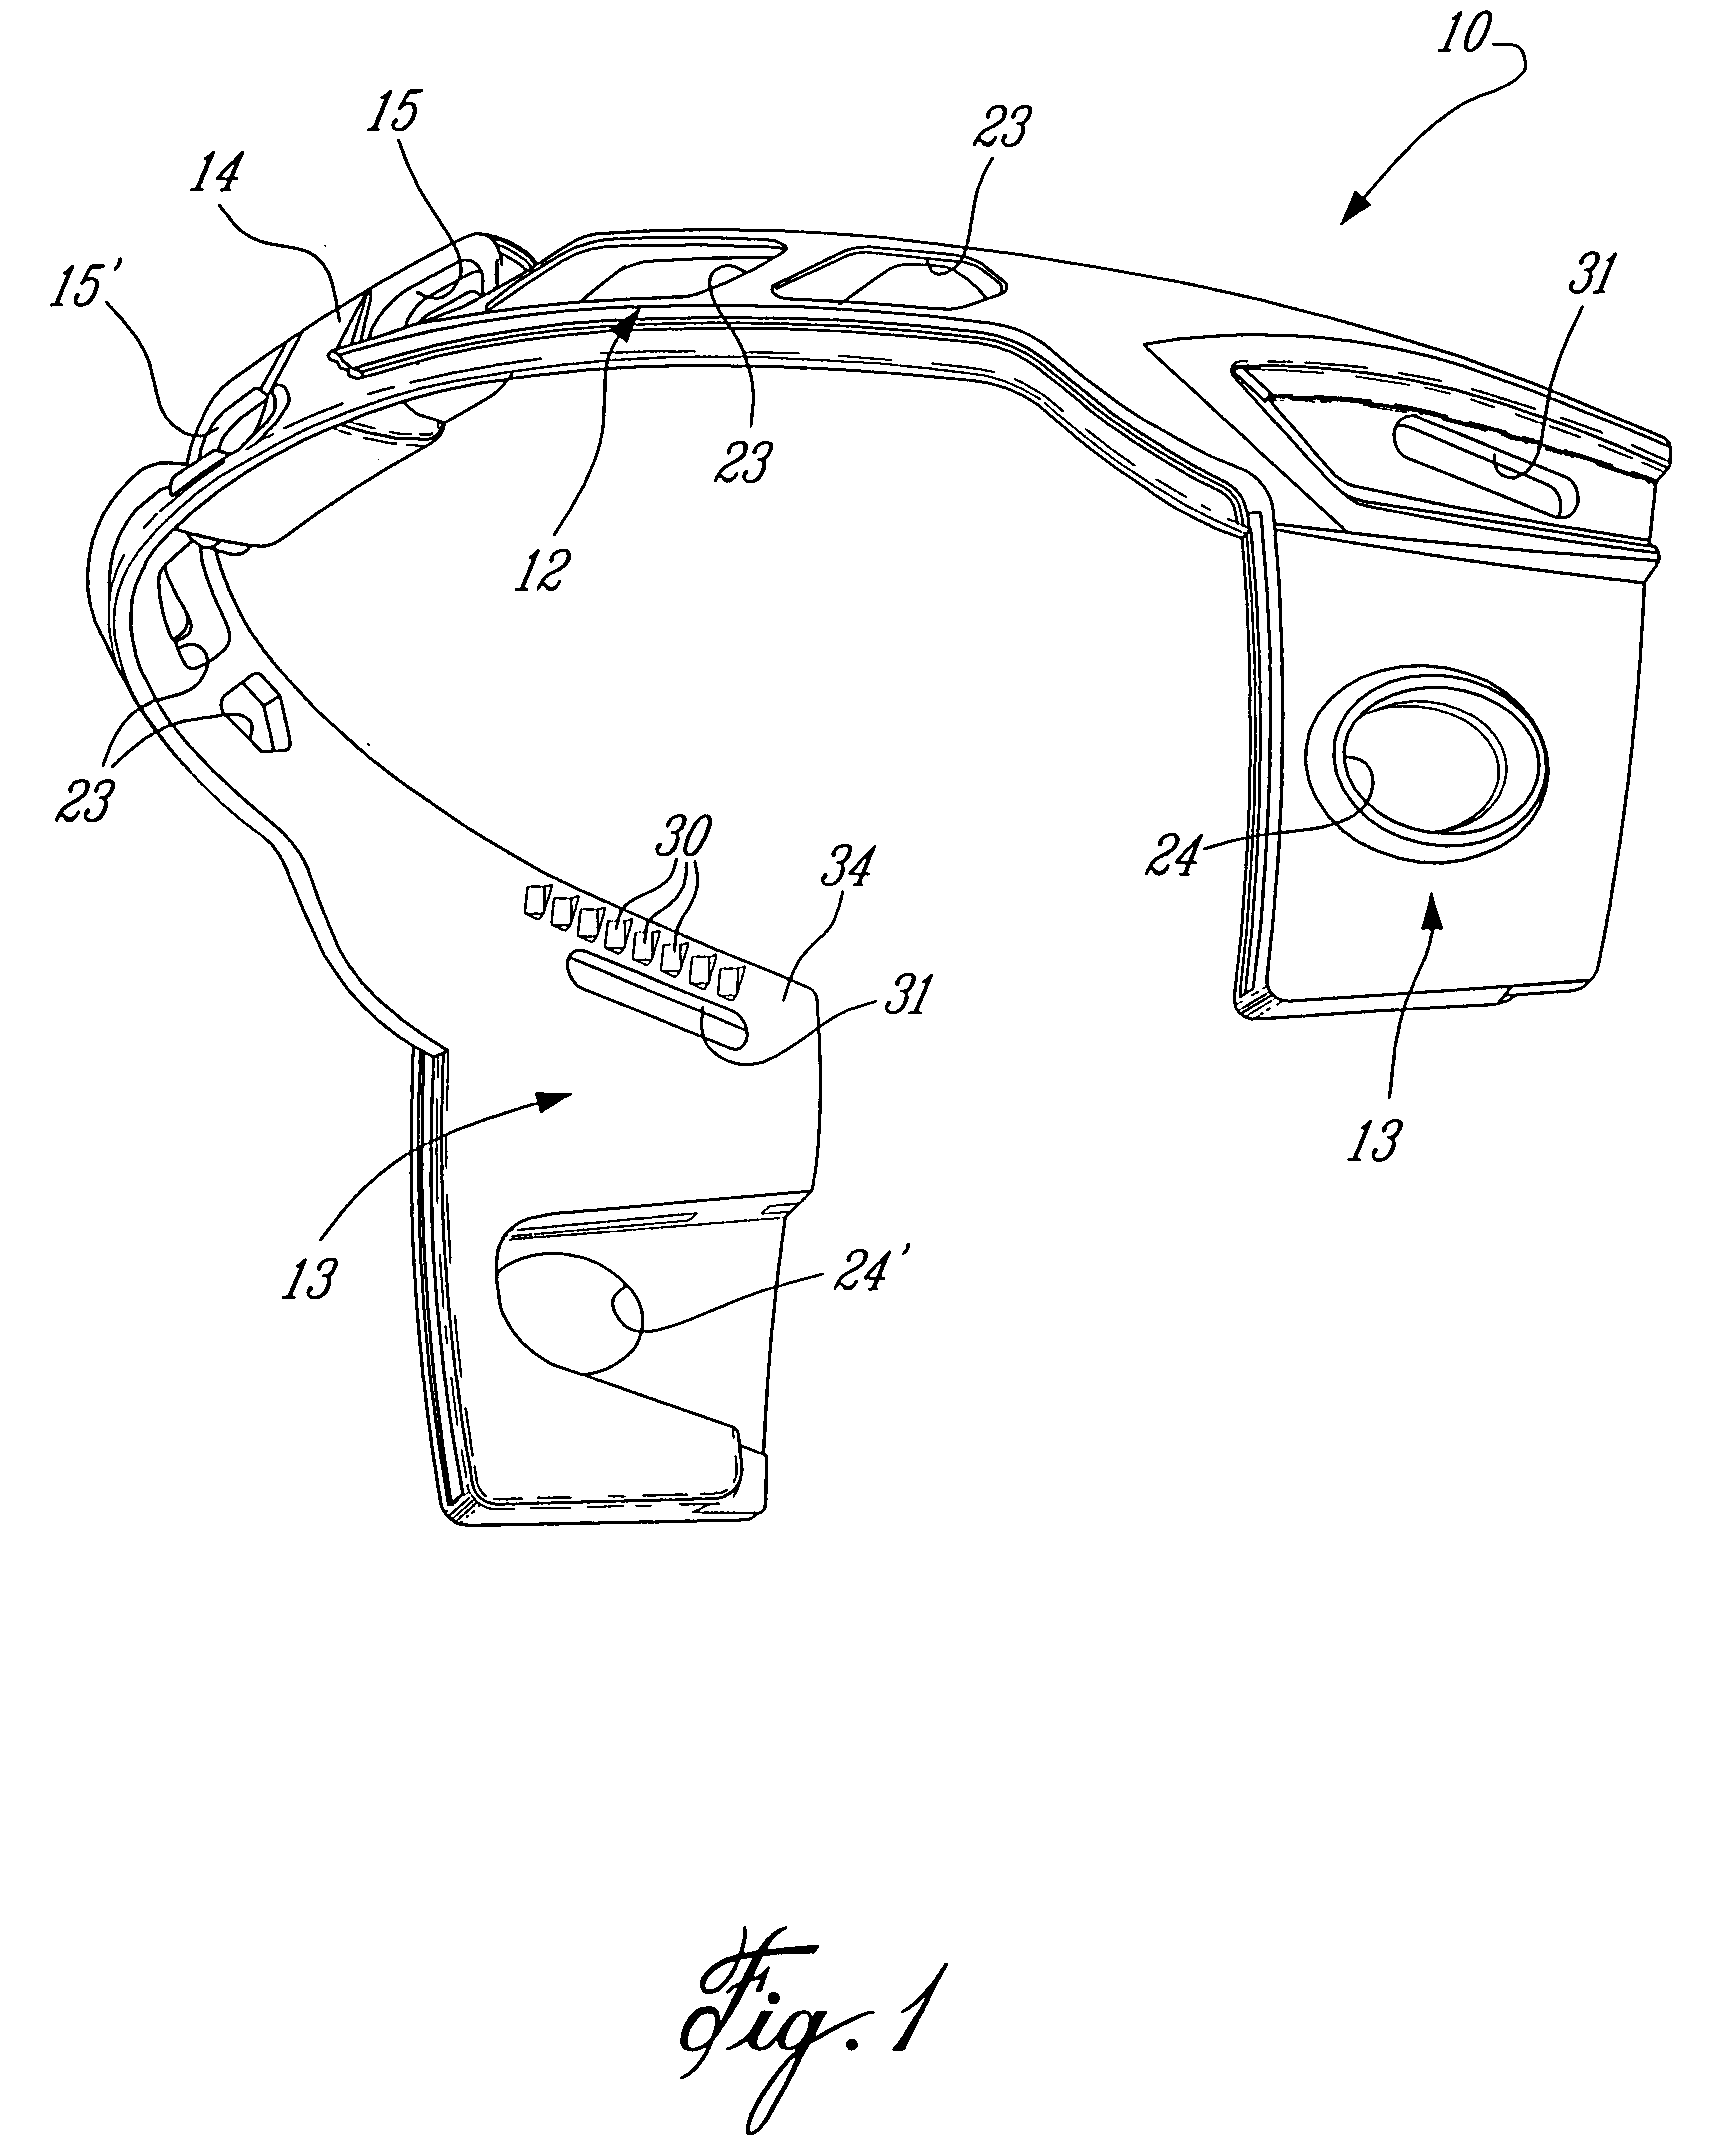 Visor holder for a head protective helmet